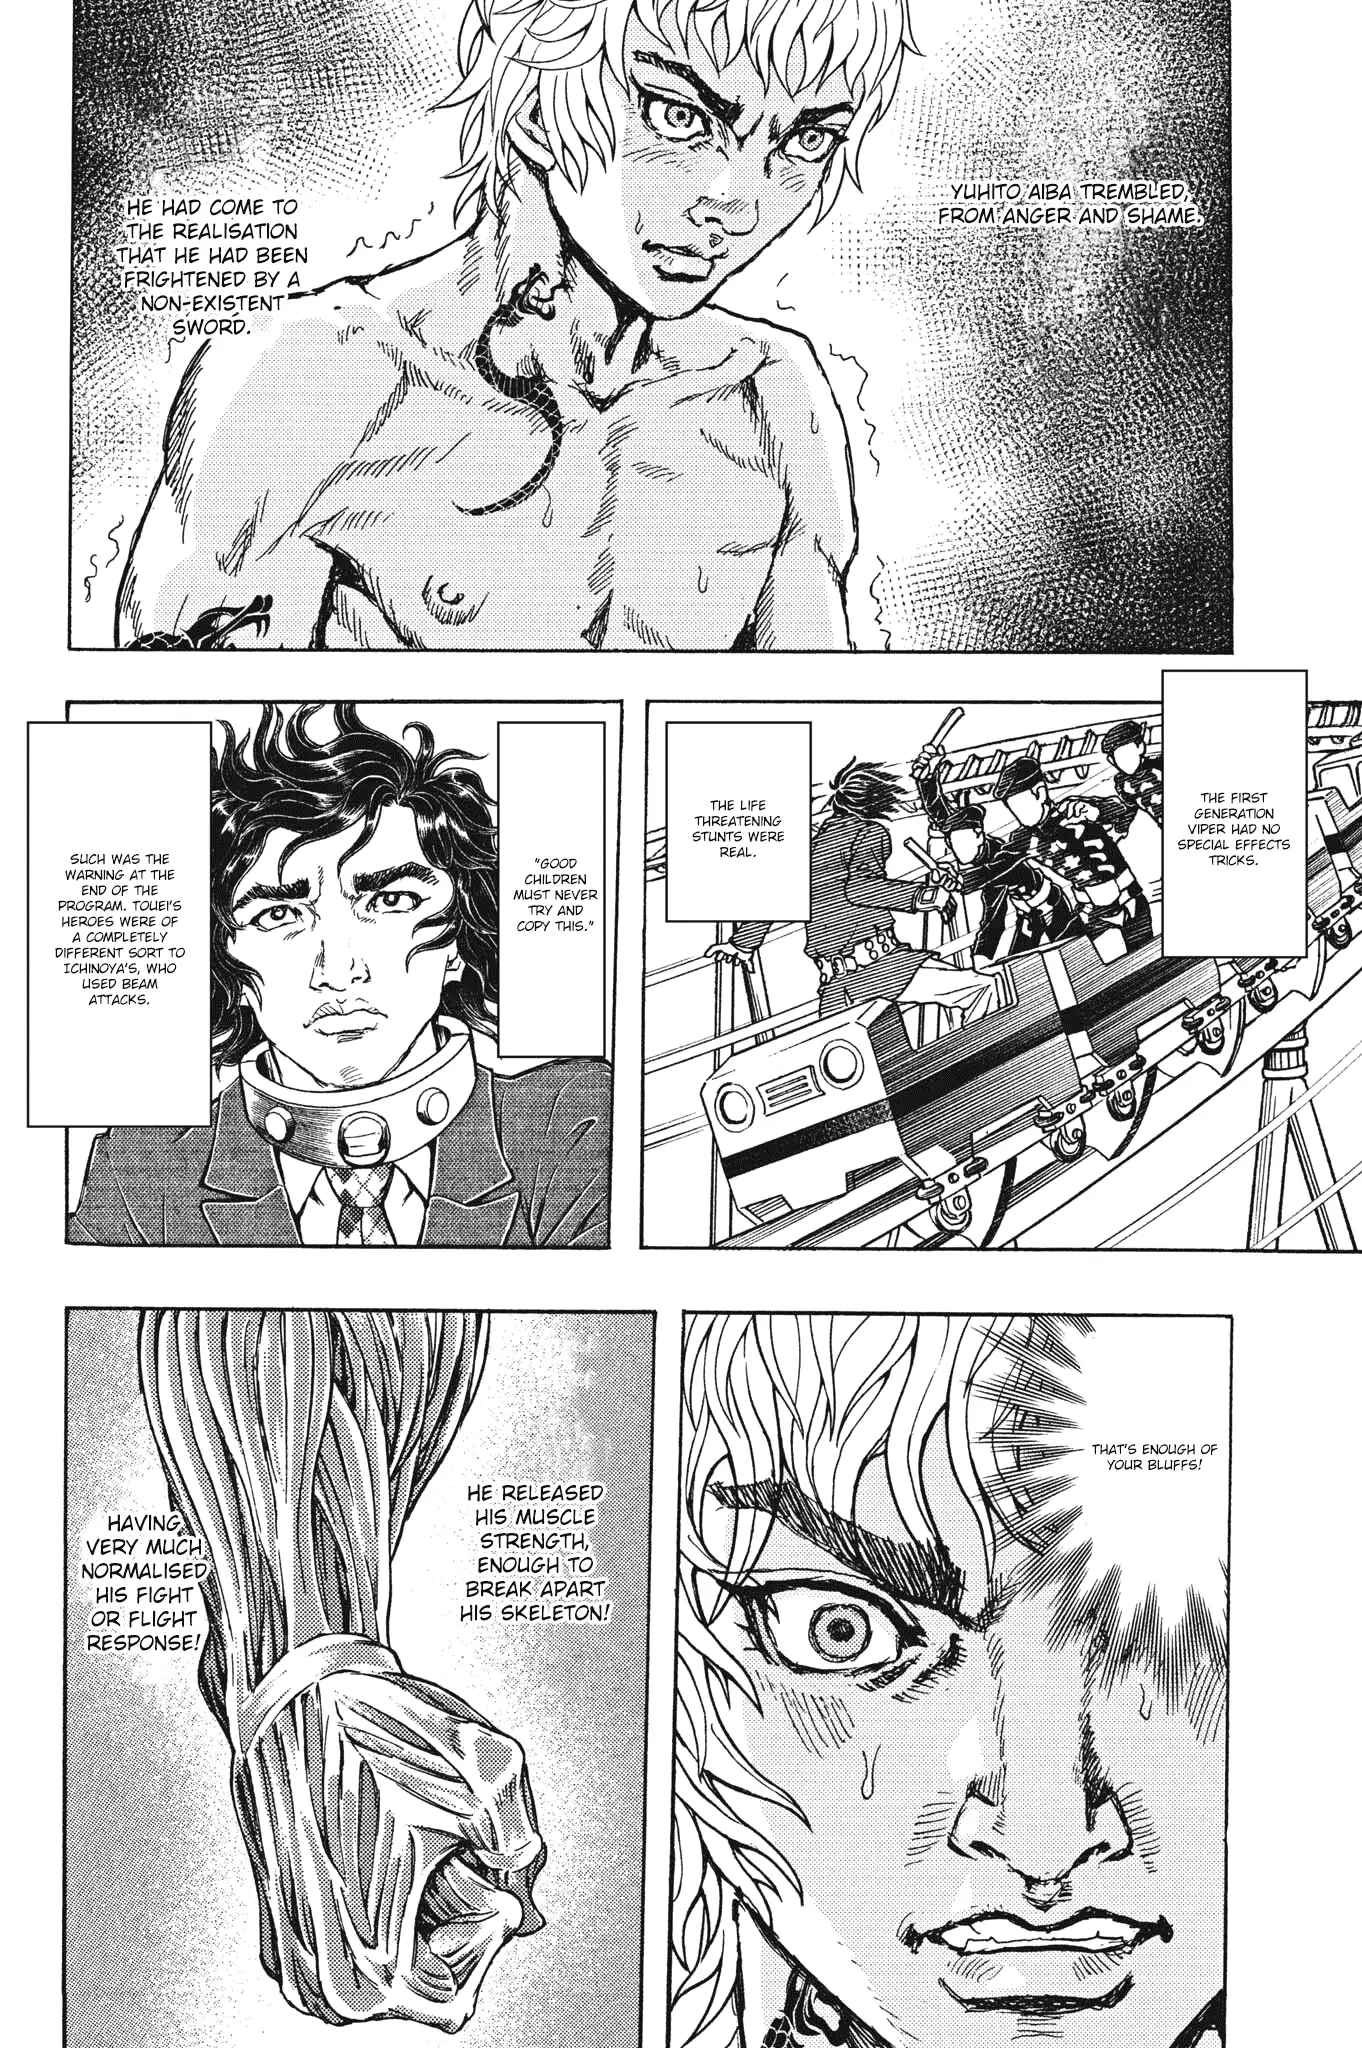 Gekikou Kamen - 25 page 12-2f22fc70